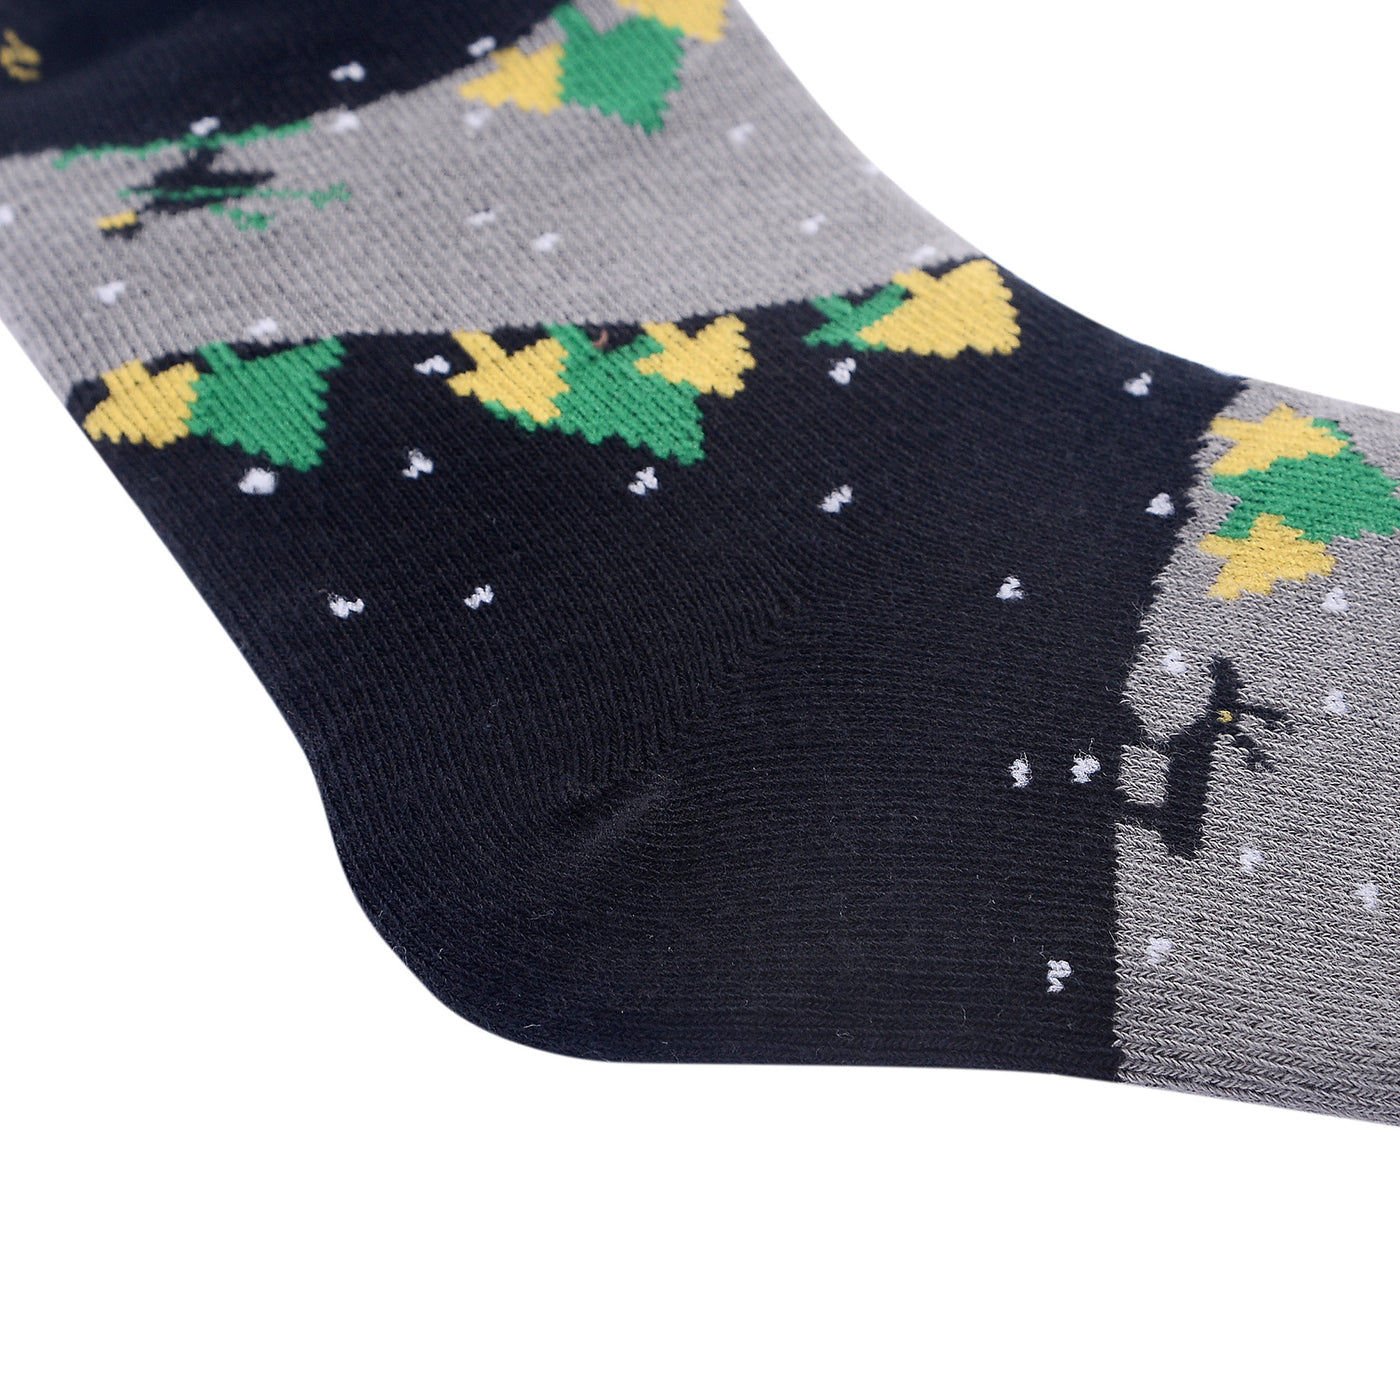 Christmas Tree Laulax 6 Pairs Combed Cotton Boy's Socks Size UK 9-11.5/Europe 27-30 Gift Set